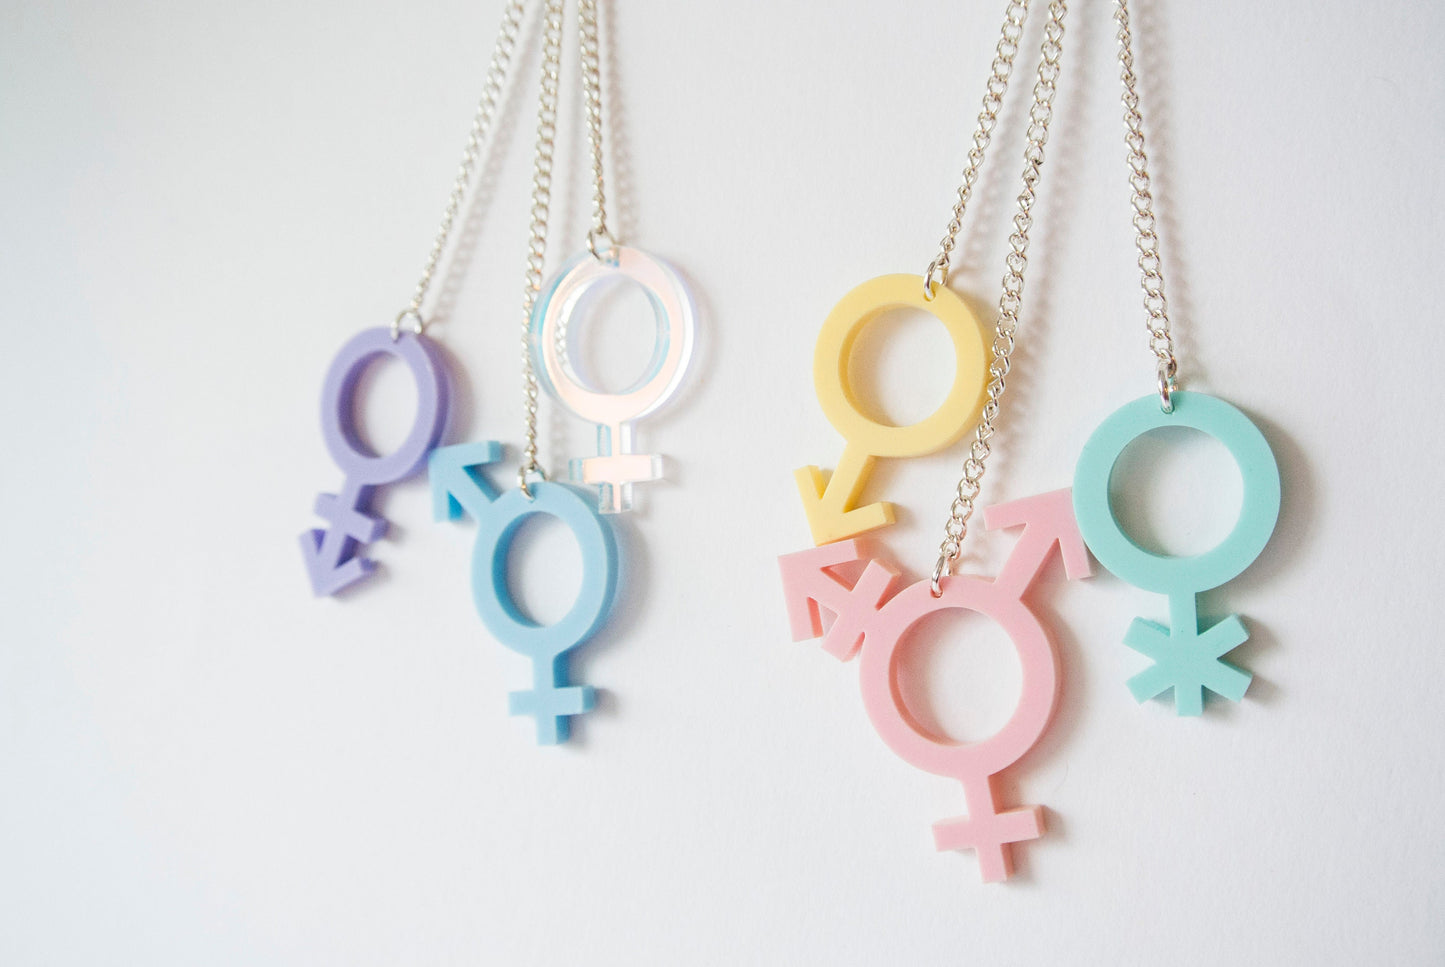 Gender Symbol Cascade Earrings